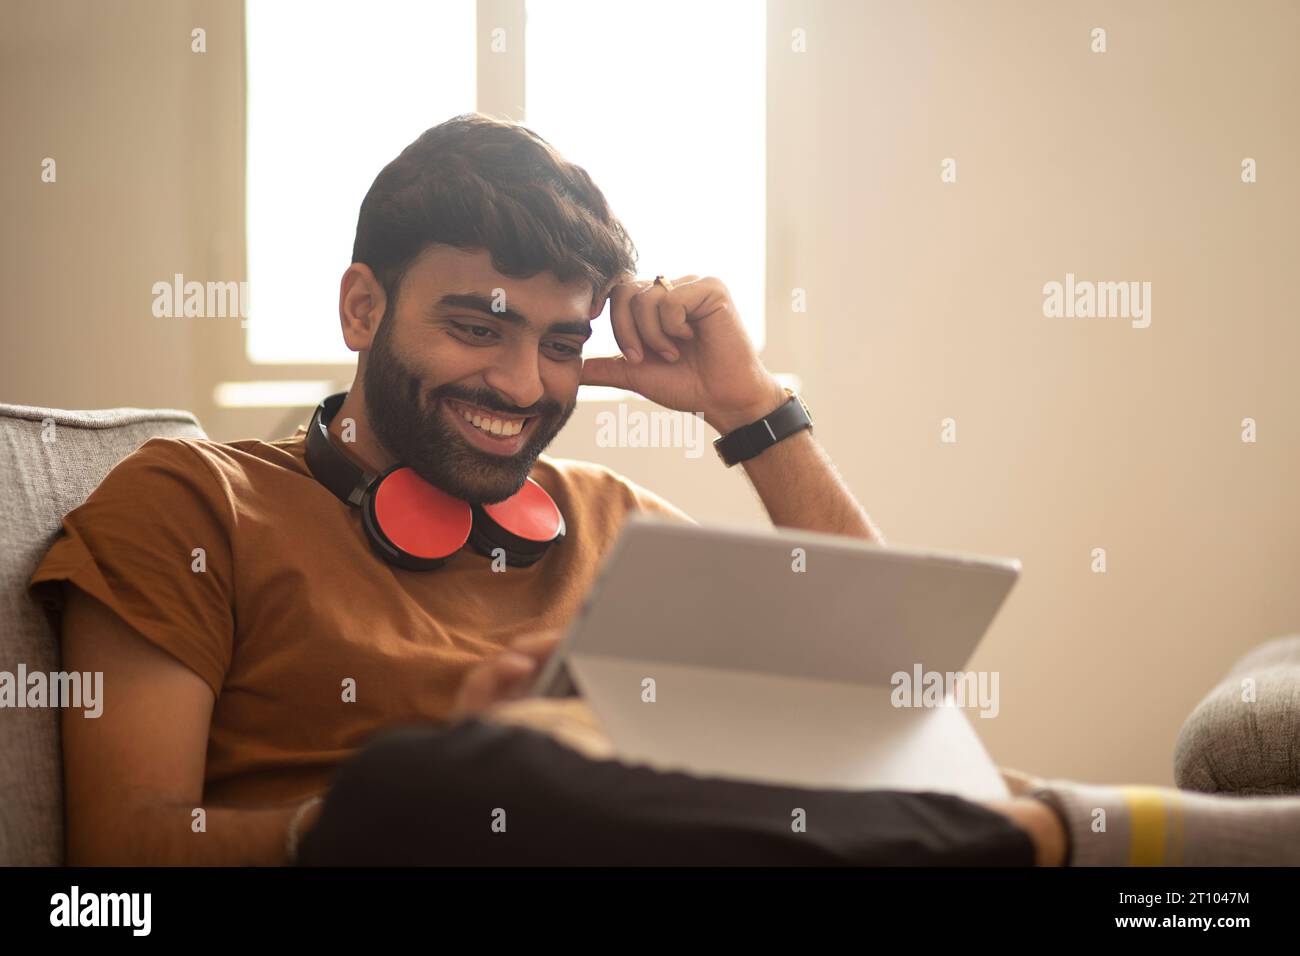 Un giovane che usa un tablet digitale mentre è seduto sul divano soggiorno Foto Stock